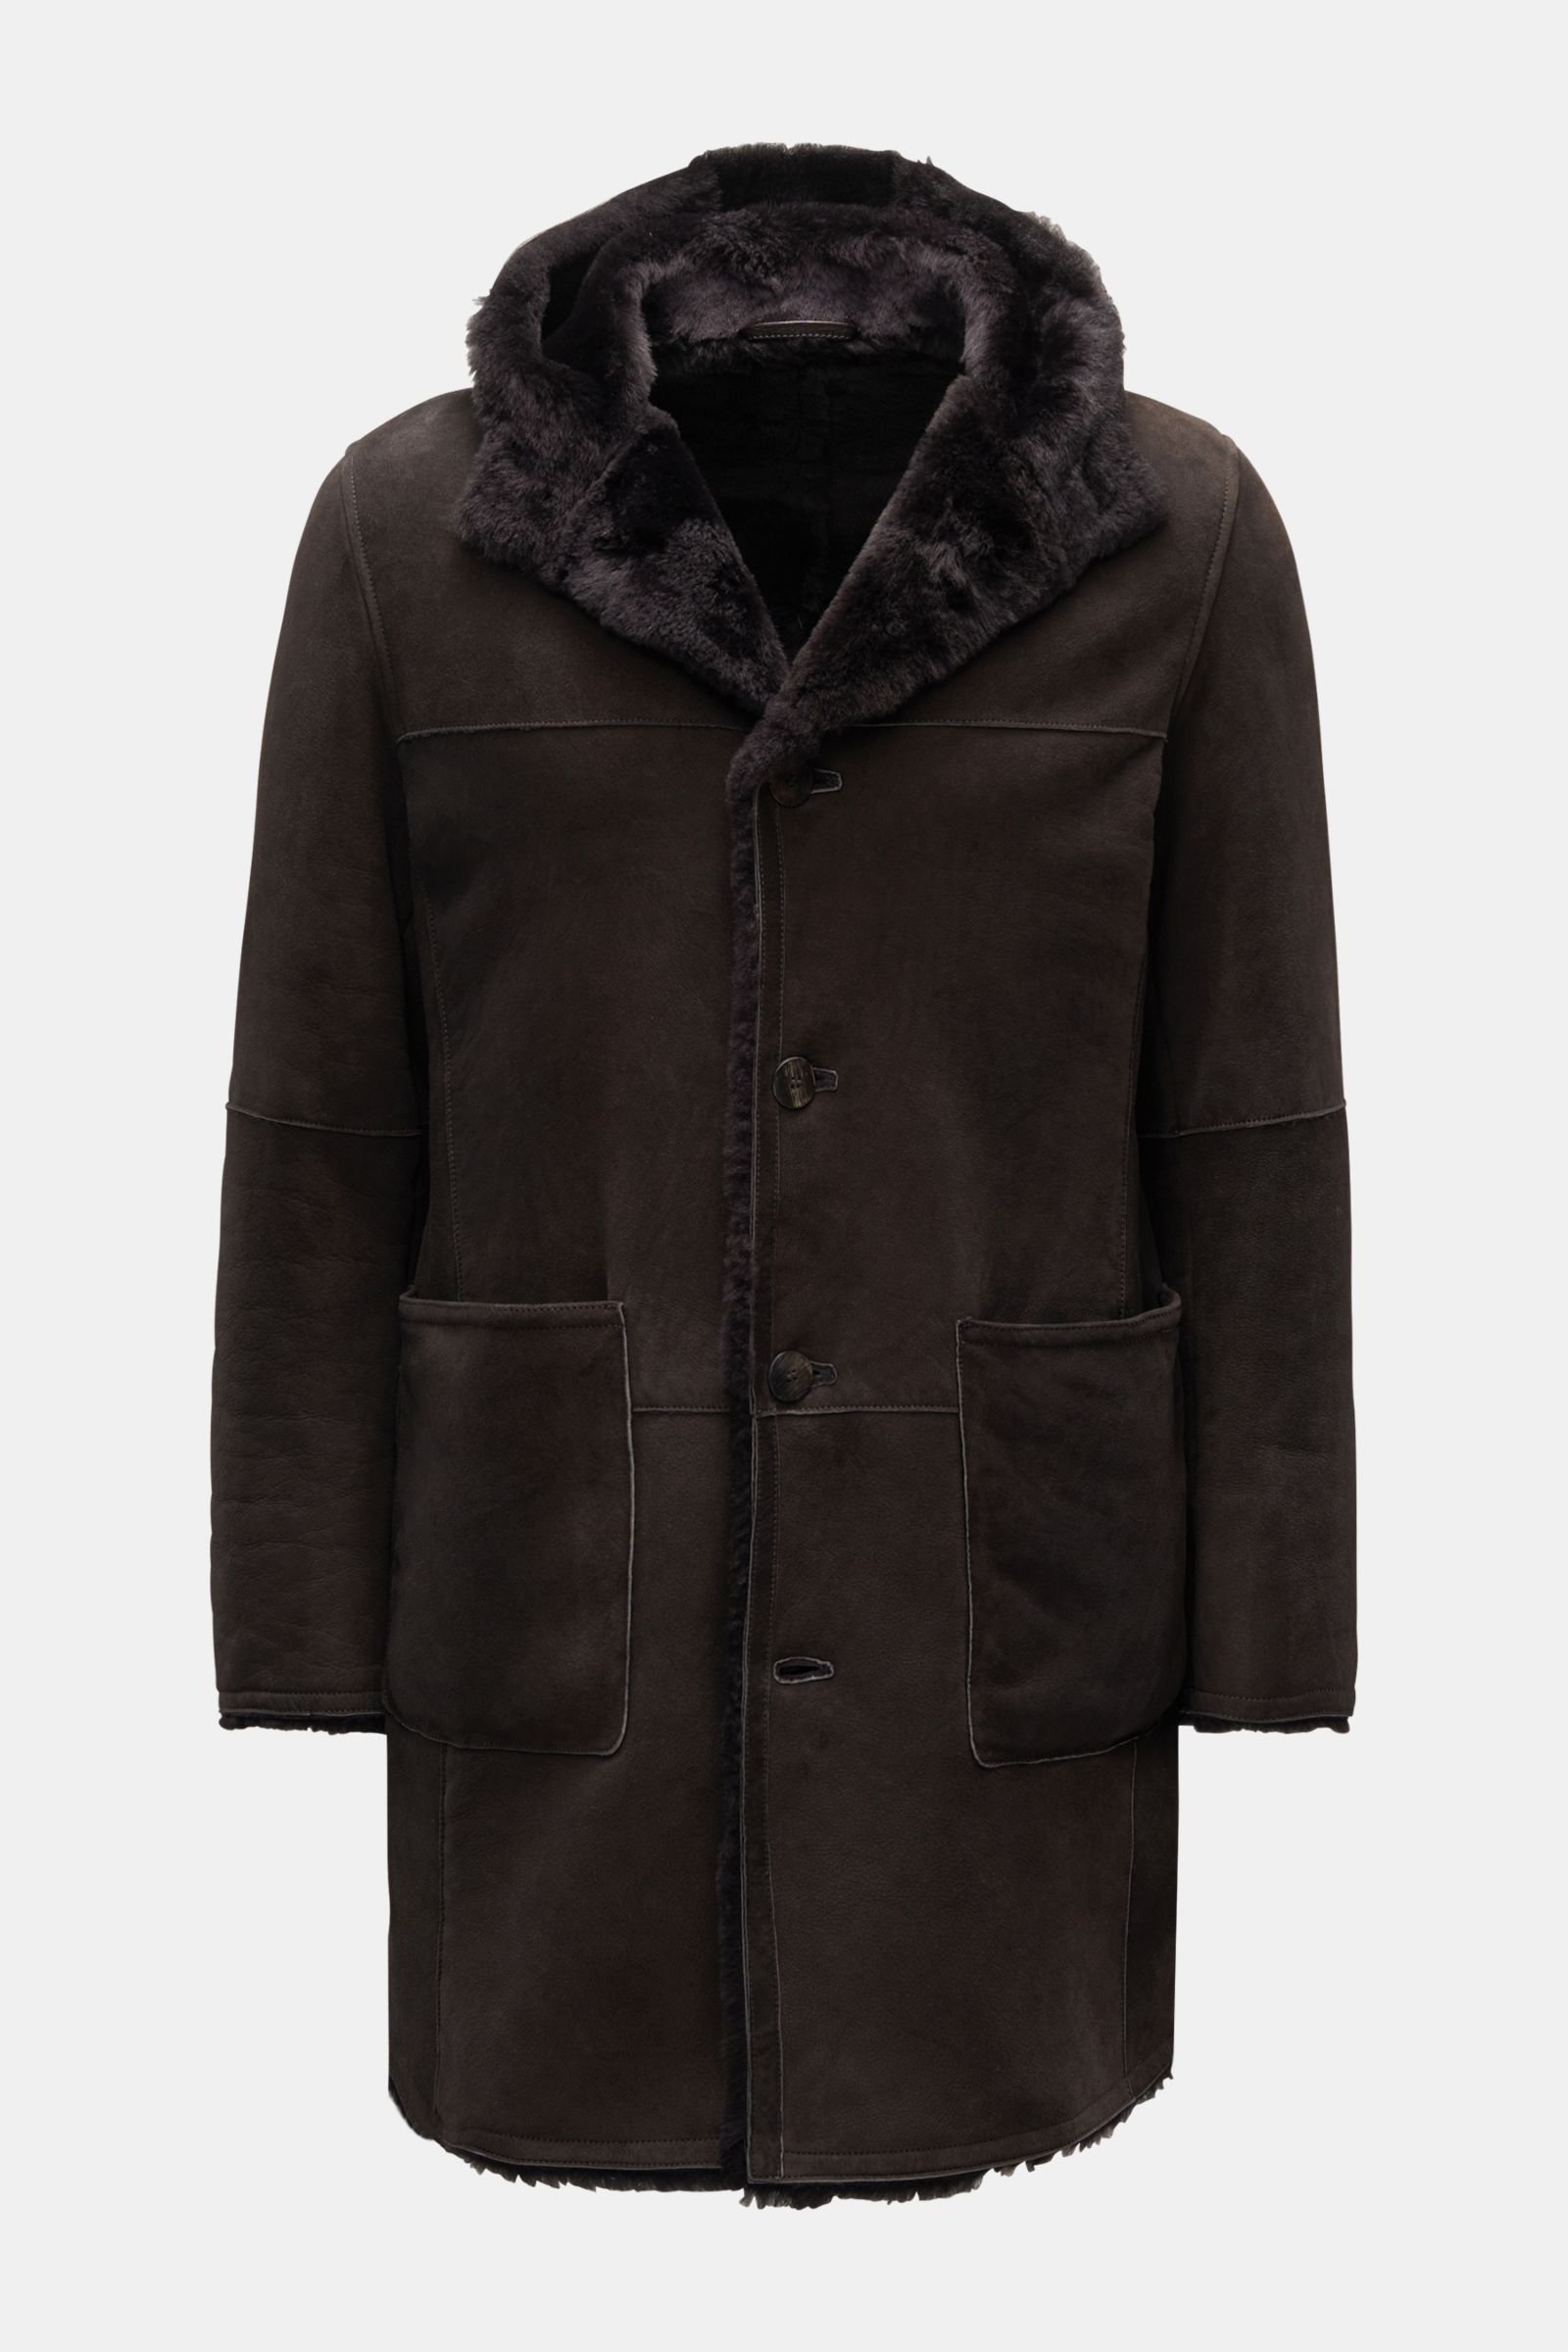 Shearling coat dark brown